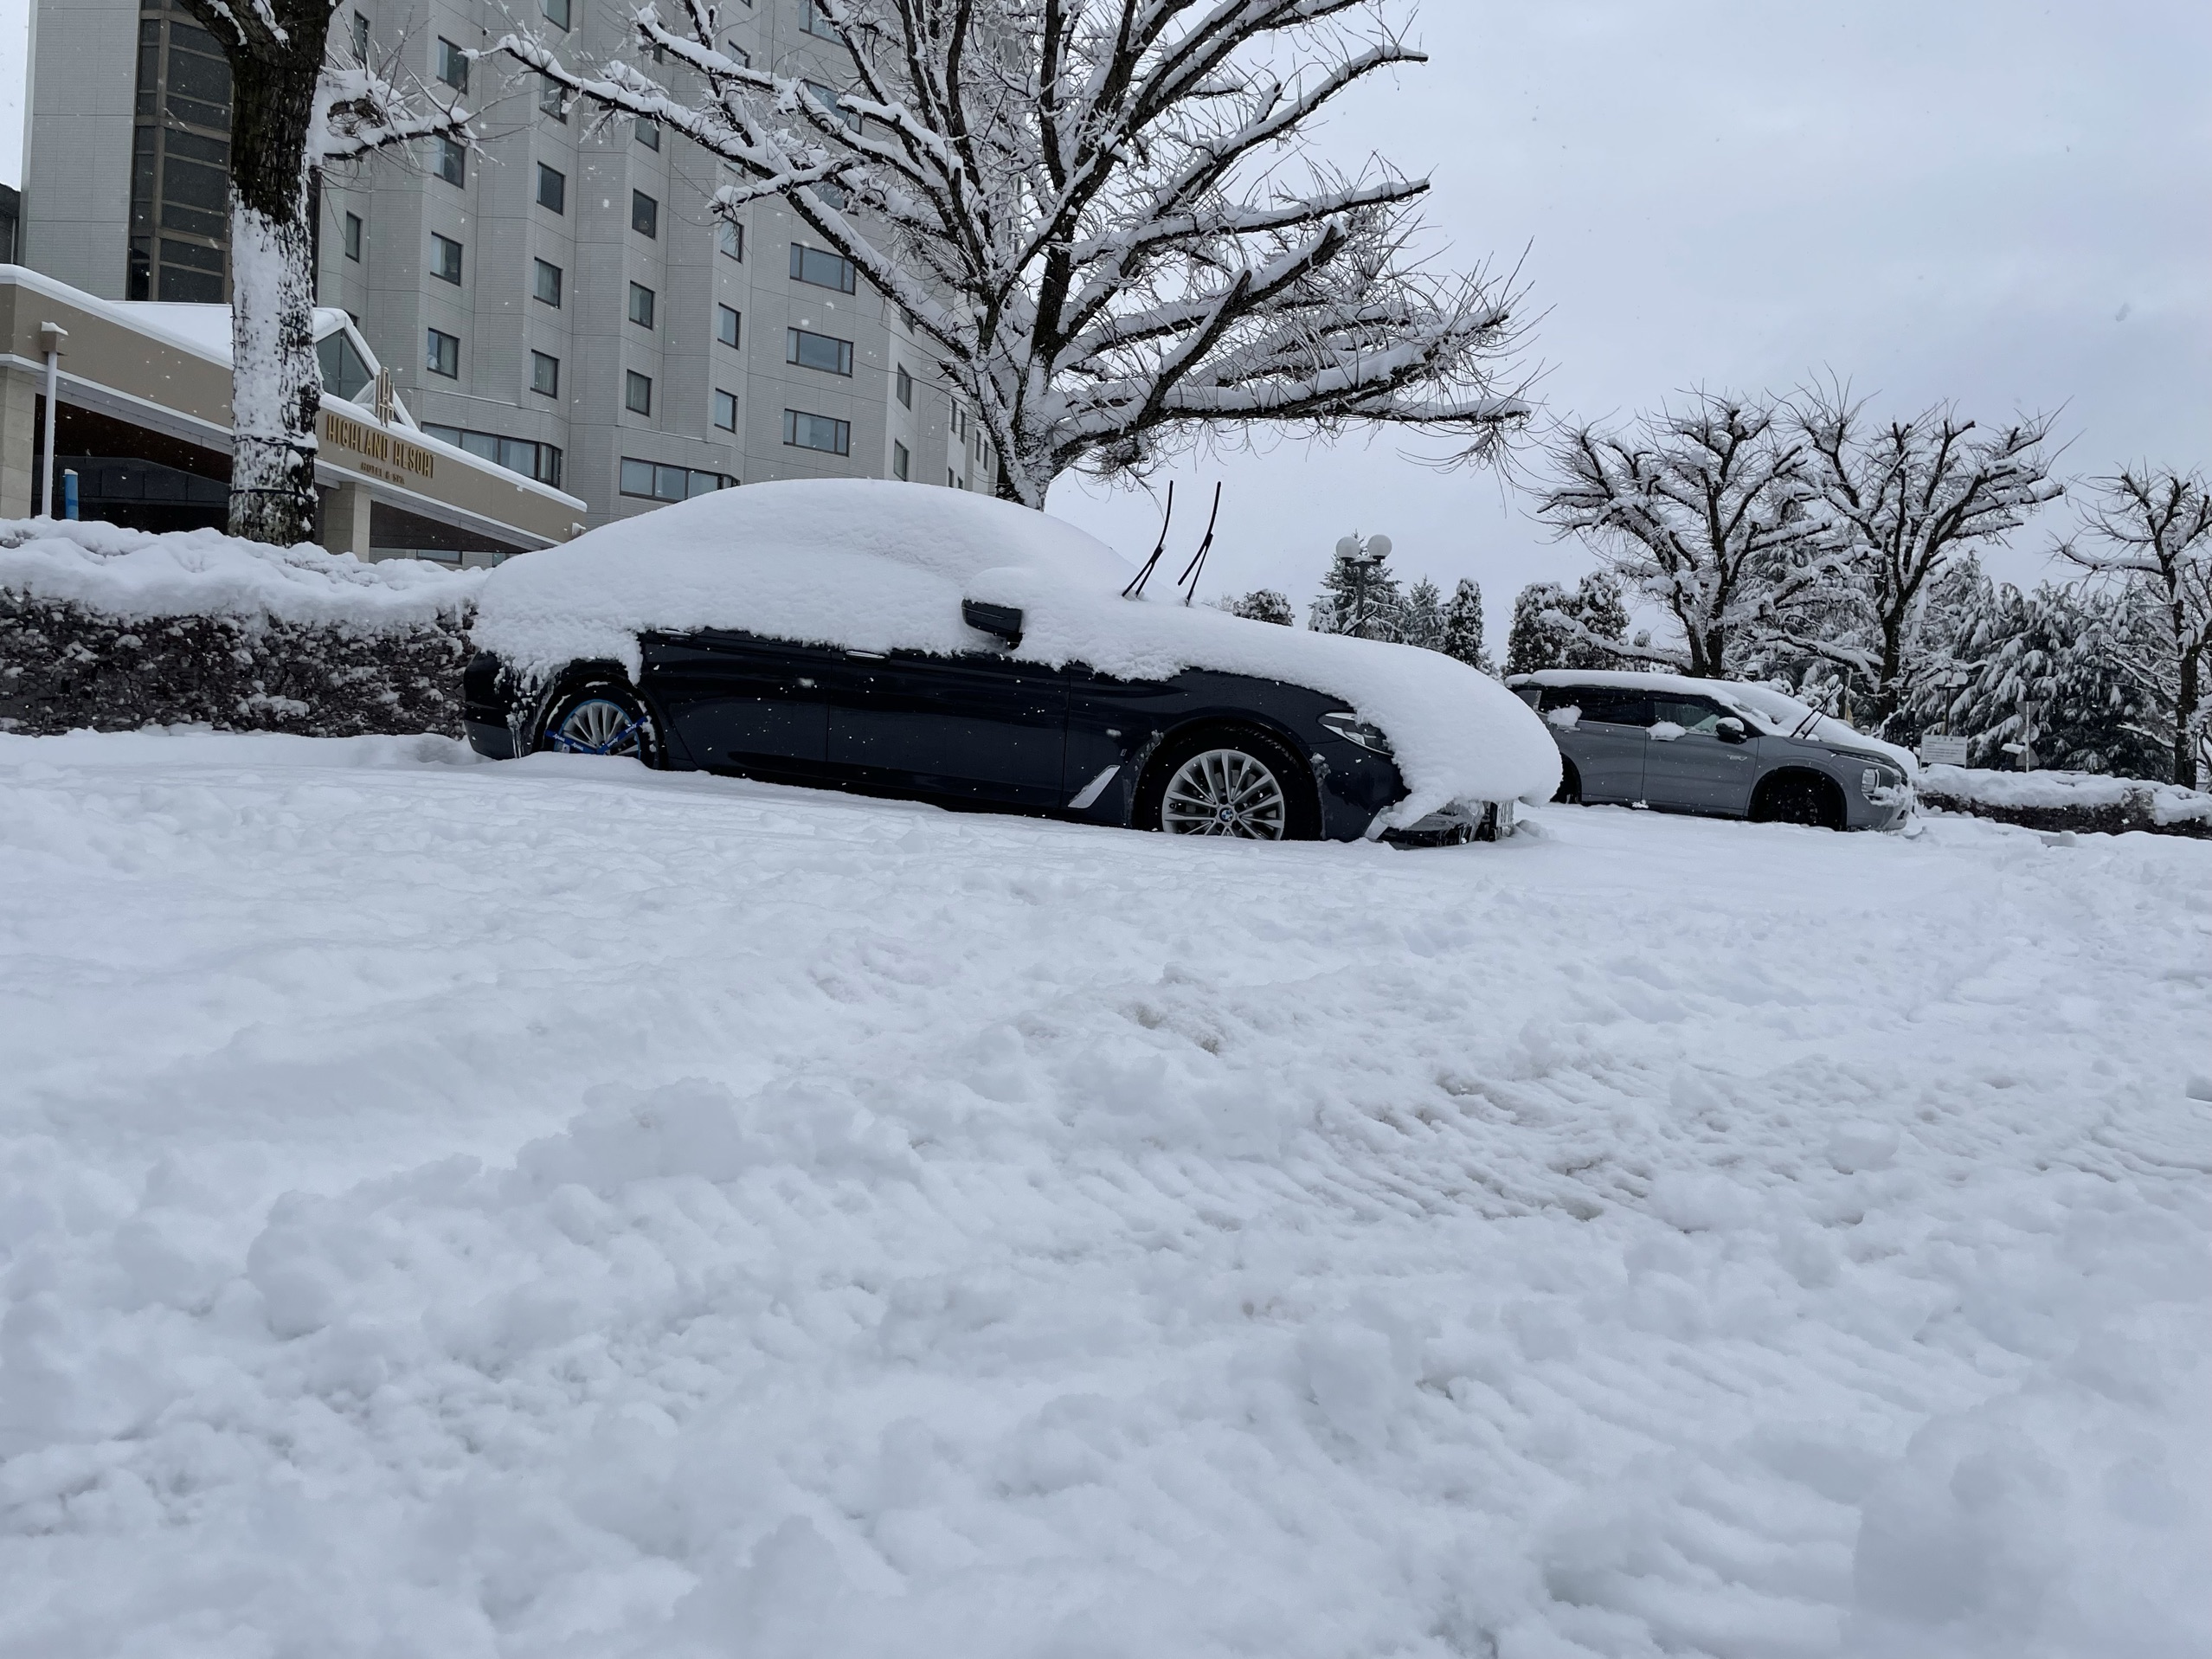 无论从硬件还是服务都很赞的。早上车被雪埋了，工作人员帮忙铲雪和推车。唯一不好就是便利店在酒店外面。不